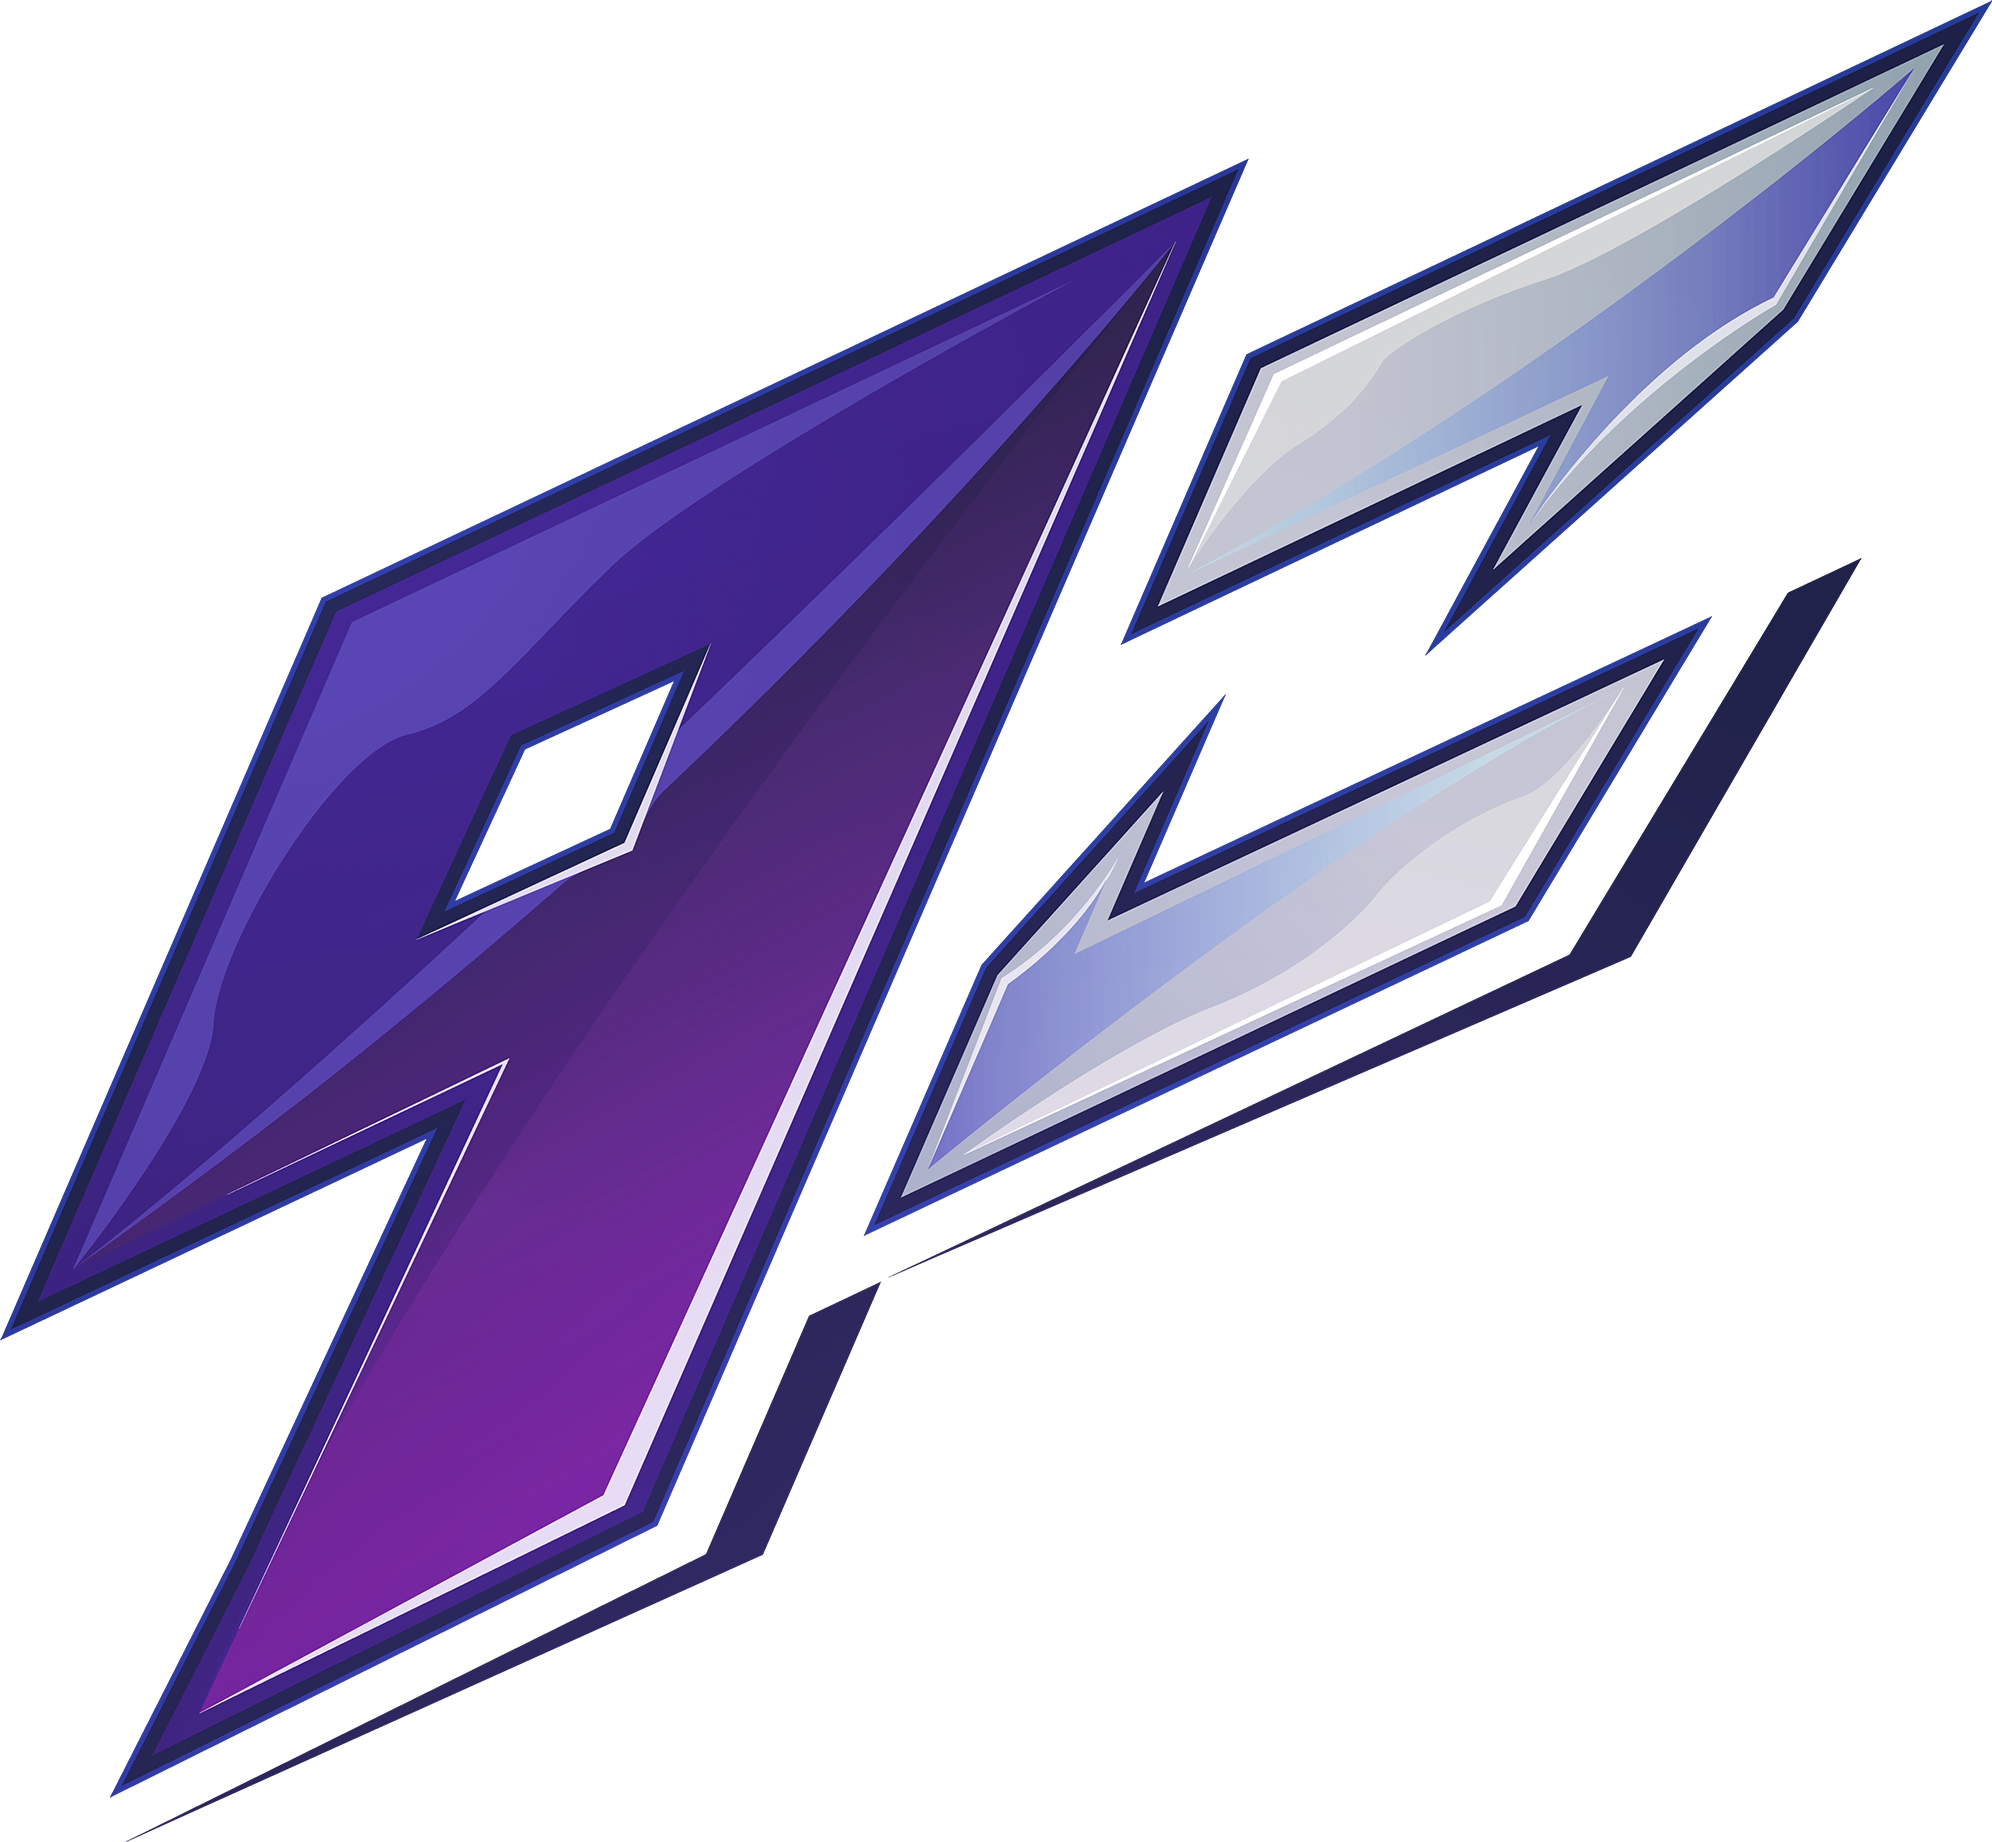 9z Team team logo